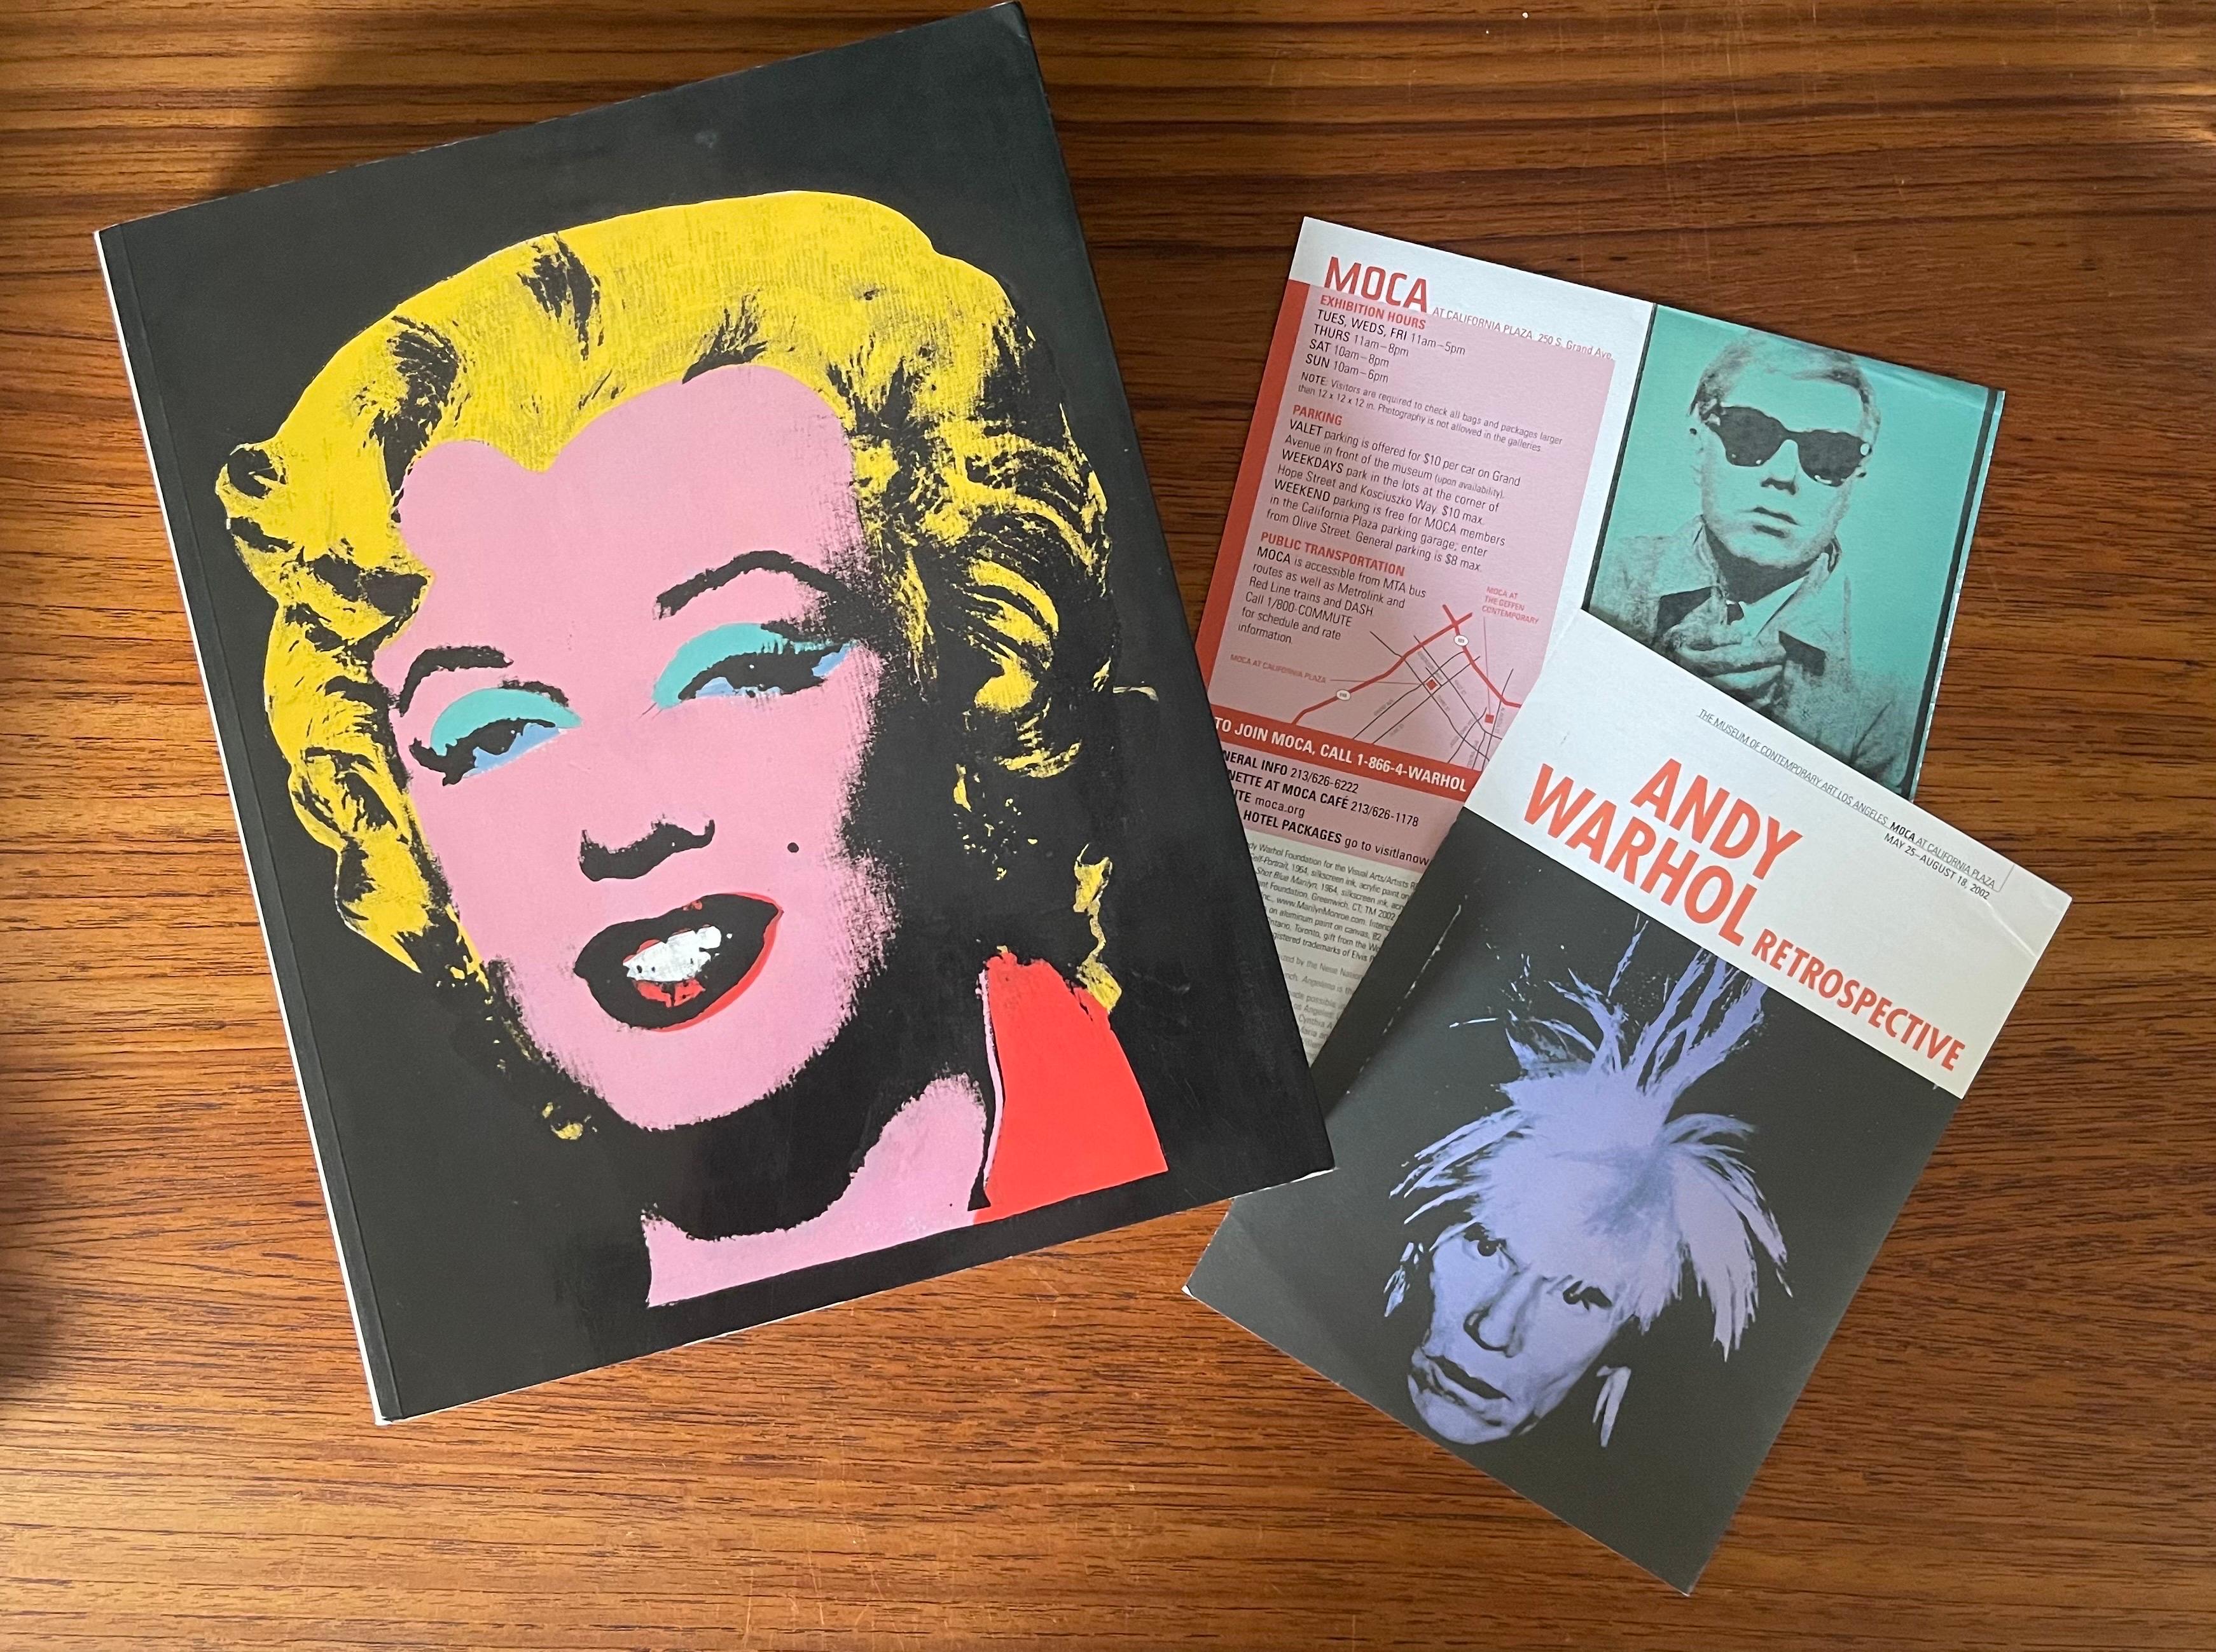 Moca LA 2002: Retrospektive Kunstbuch- und Ausstellungsprogramme von Warhol (Moderne der Mitte des Jahrhunderts) im Angebot